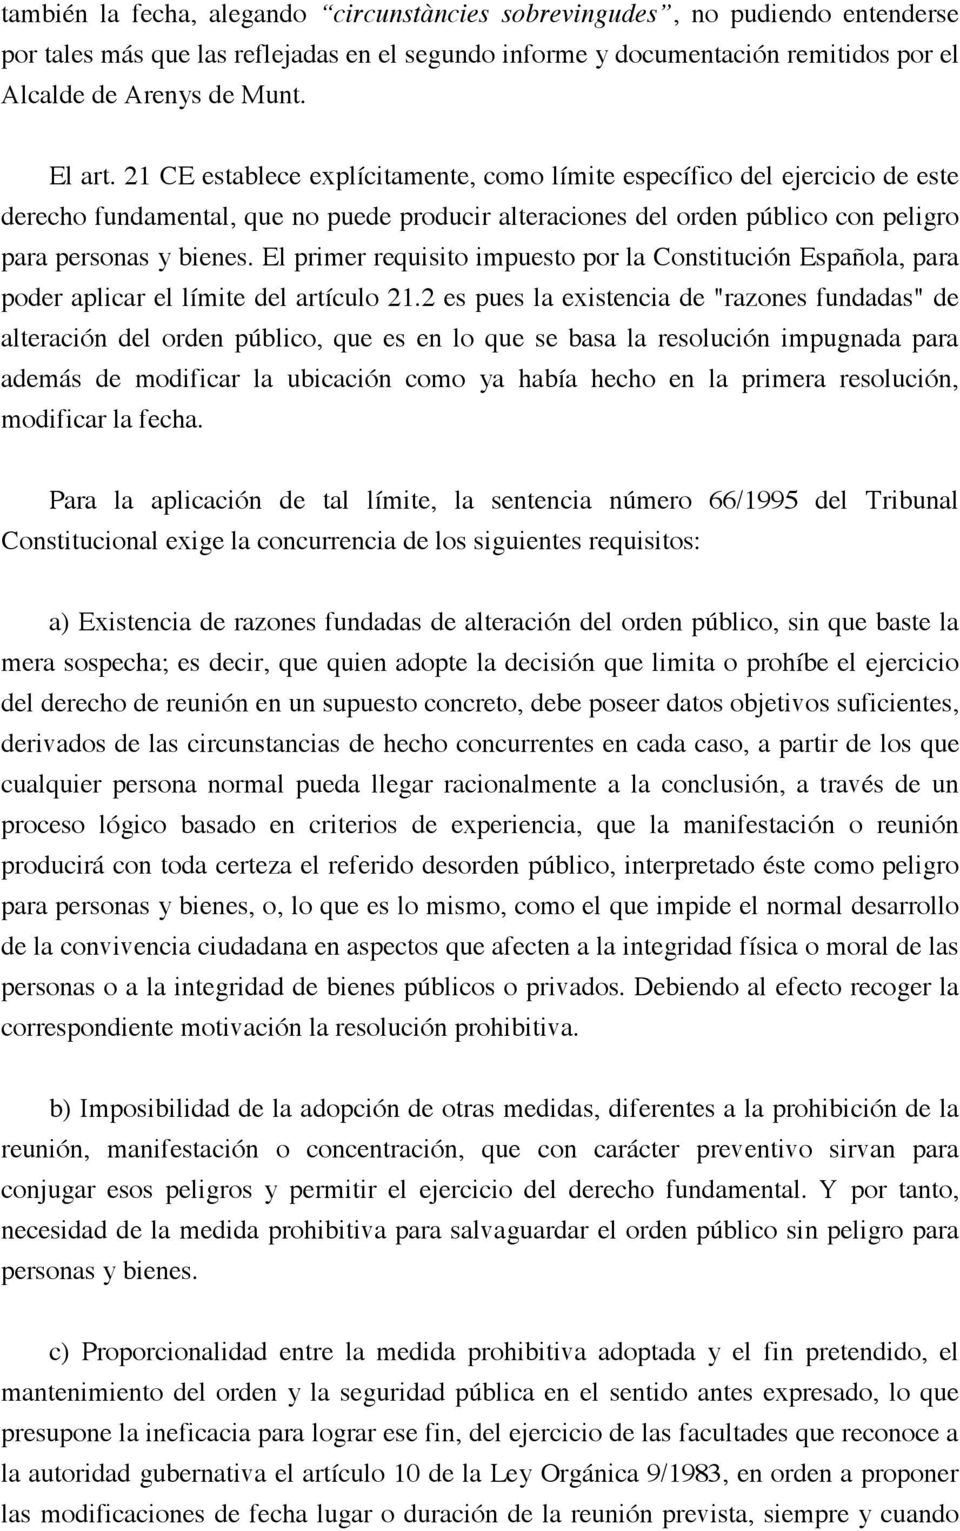 El primer requisito impuesto por la Constitución Española, para poder aplicar el límite del artículo 21.